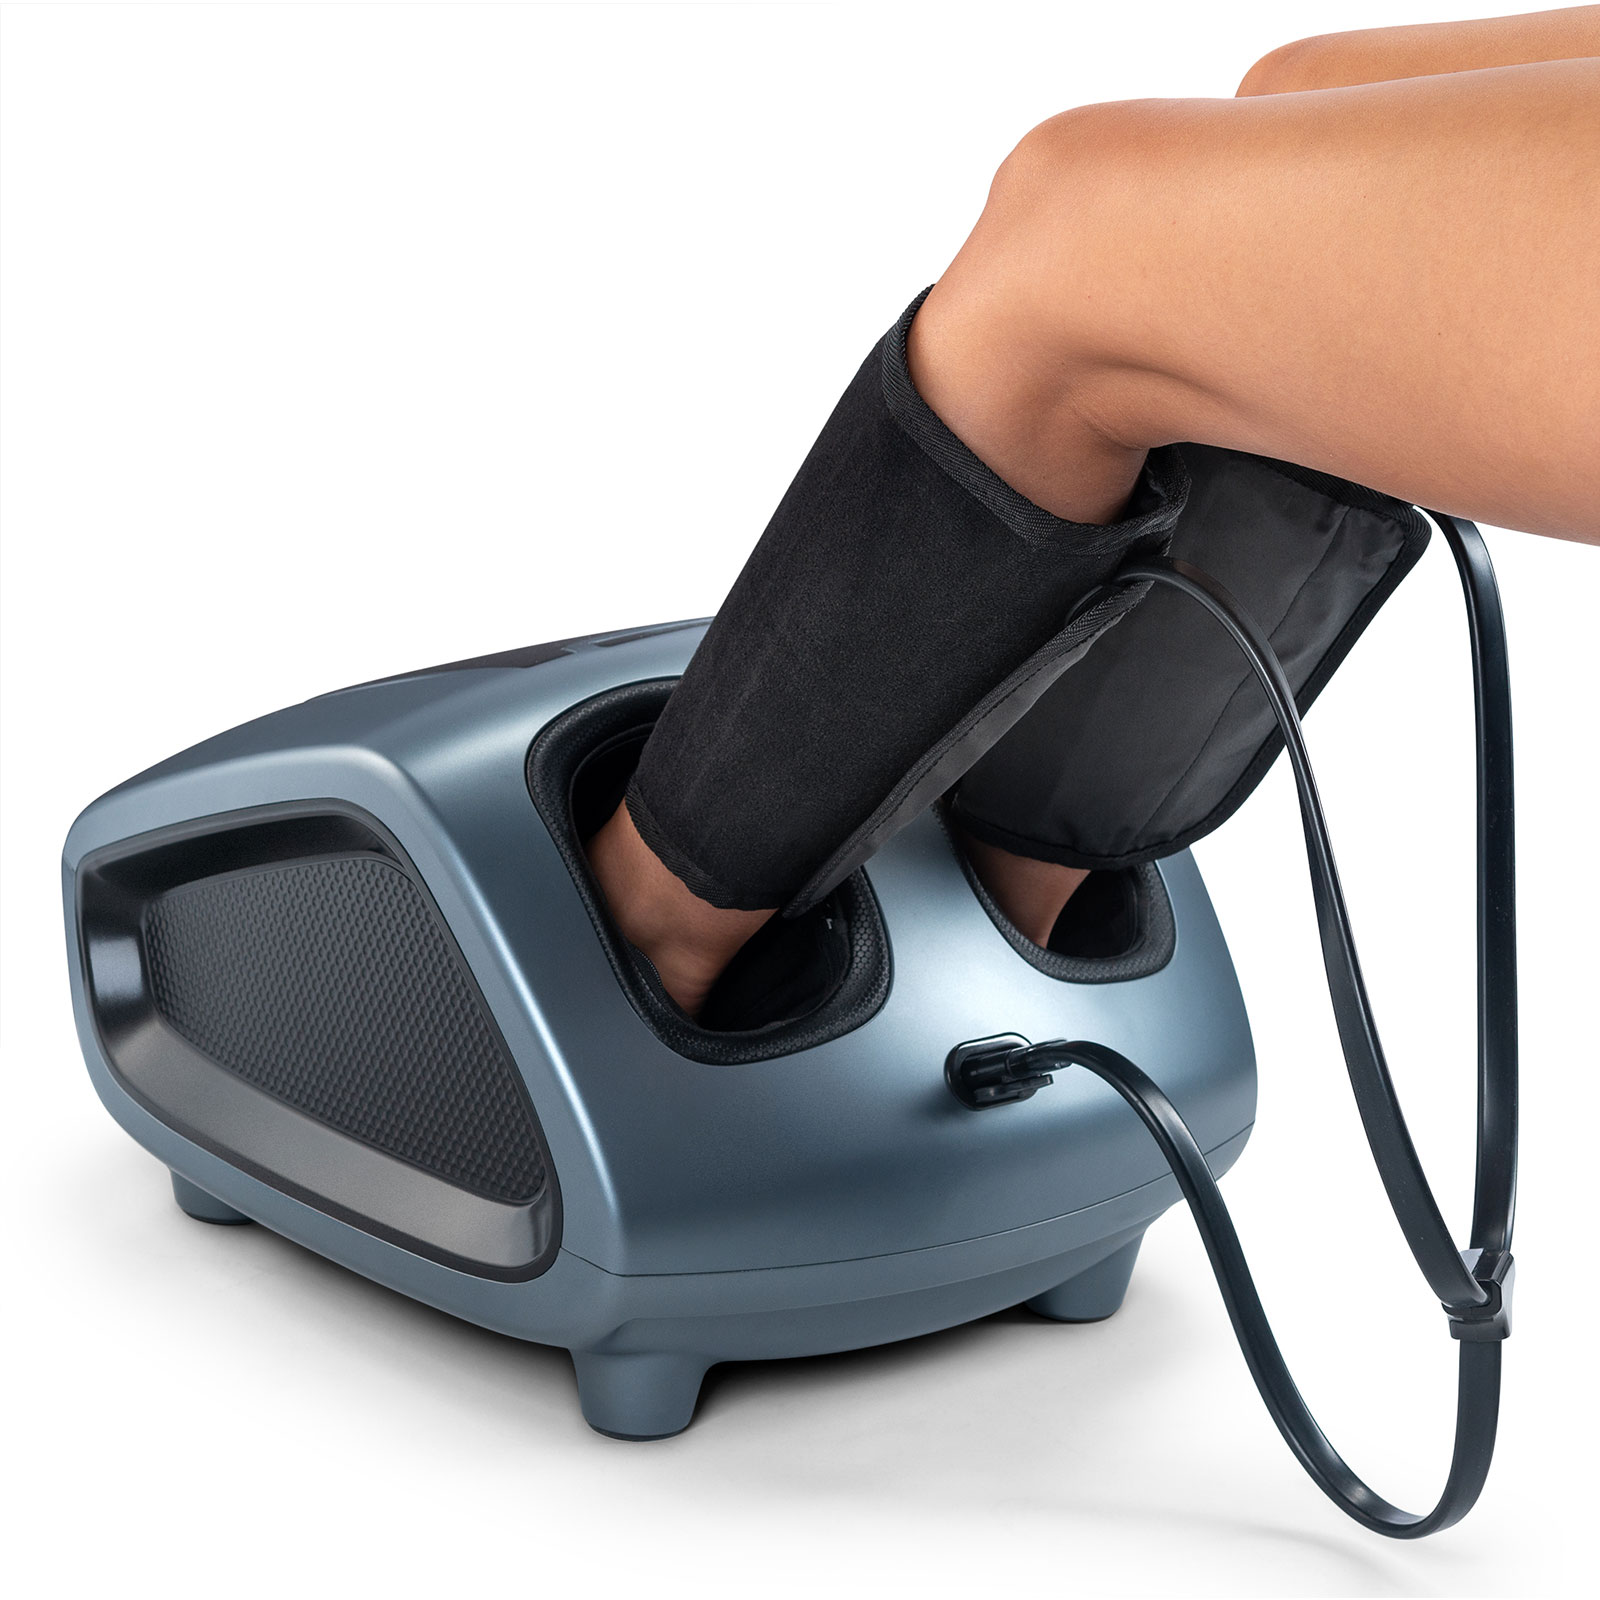 Belmint Belmint Shiatsu Foot Massager With Air Bag Massage Pressure